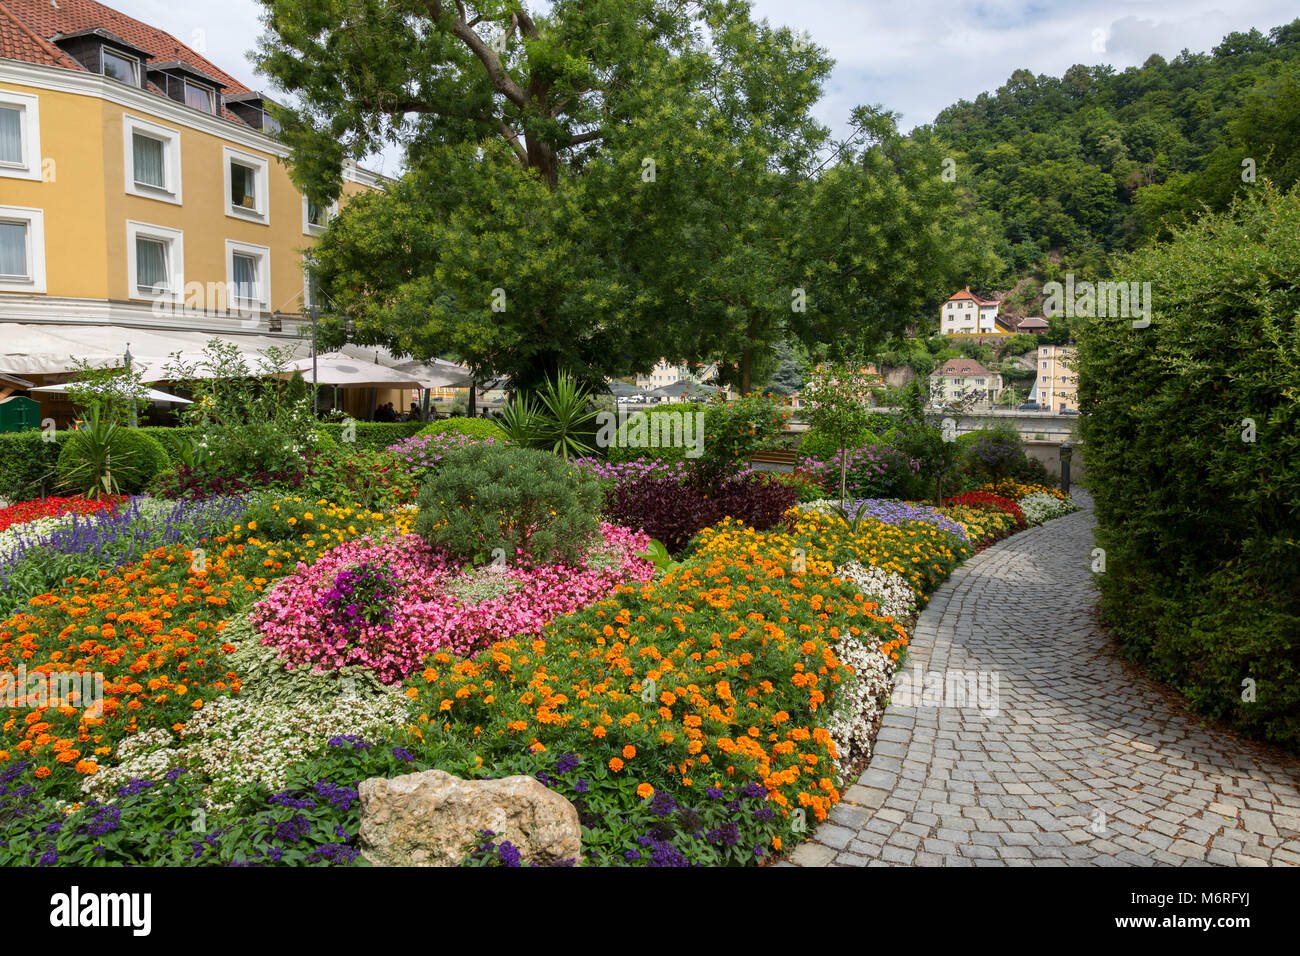 Blumengarten von gepflasterten Gehweg in der charmanten bayerischen Stadt Passau, Deutschland umgeben. Stockfoto